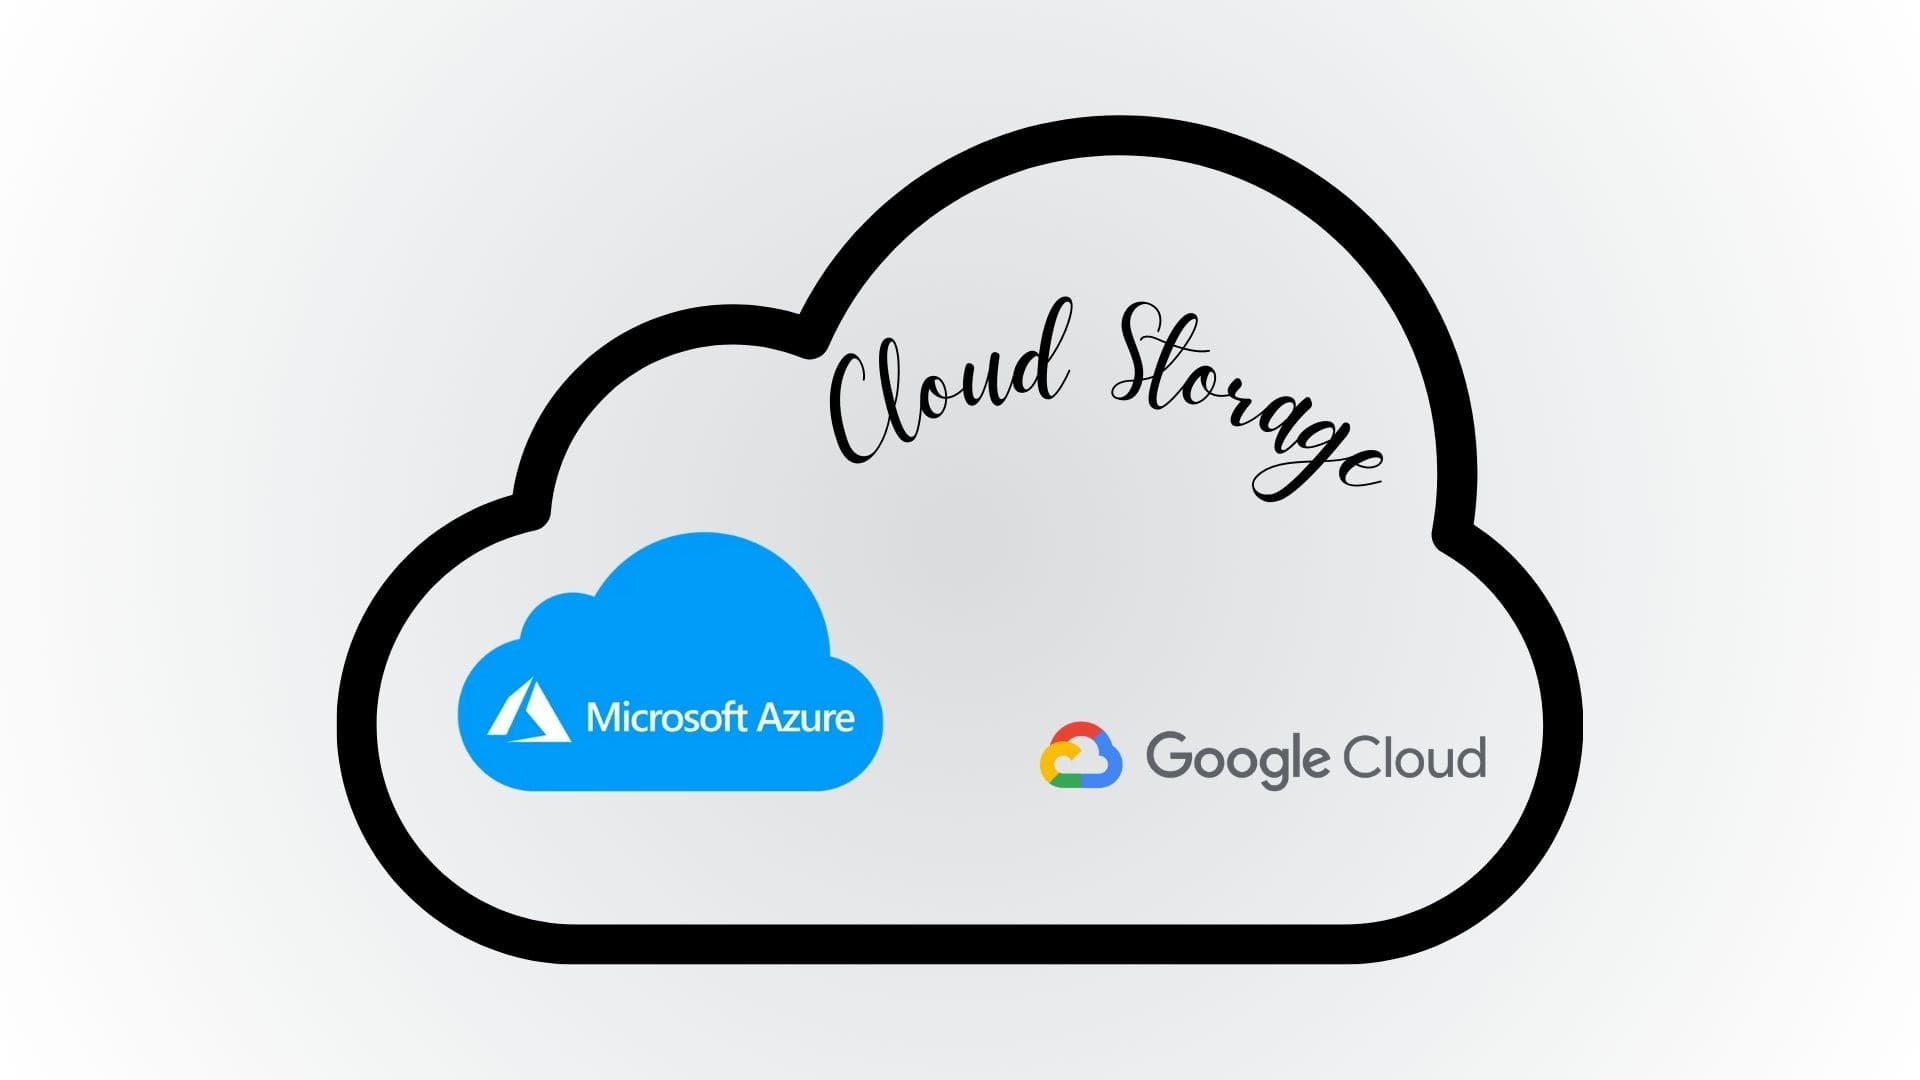 Composición de lo que contendra el módulo de Cloud Service: Azure Cloud y Google Cloud